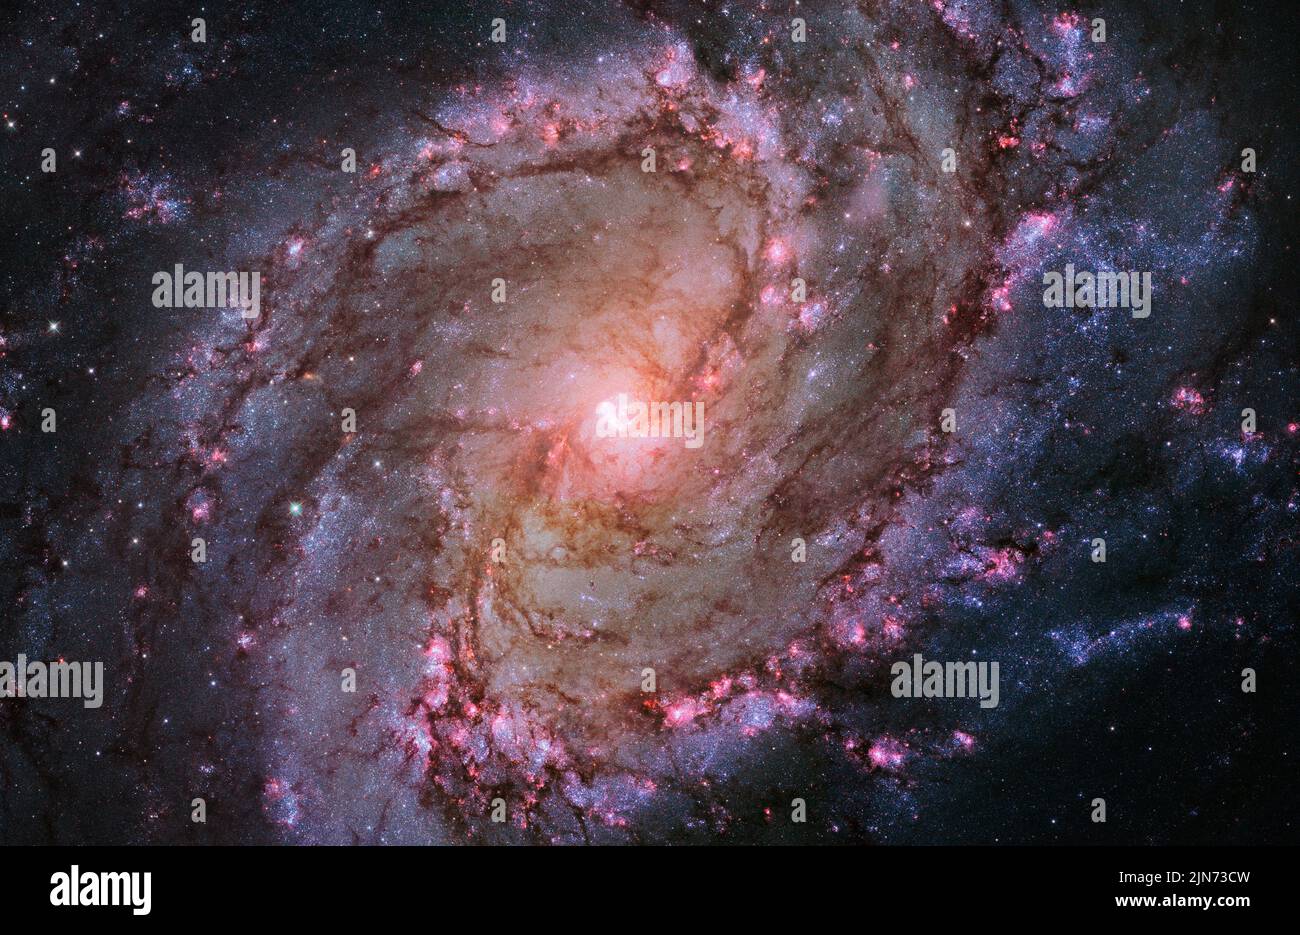 SPAZIO ESTERNO - 09 Gennaio 2014 - i magentas vibranti e blues in questo telescopio spaziale Hubble immagine composita della galassia a spirale barrata M83 rivelano t Foto Stock